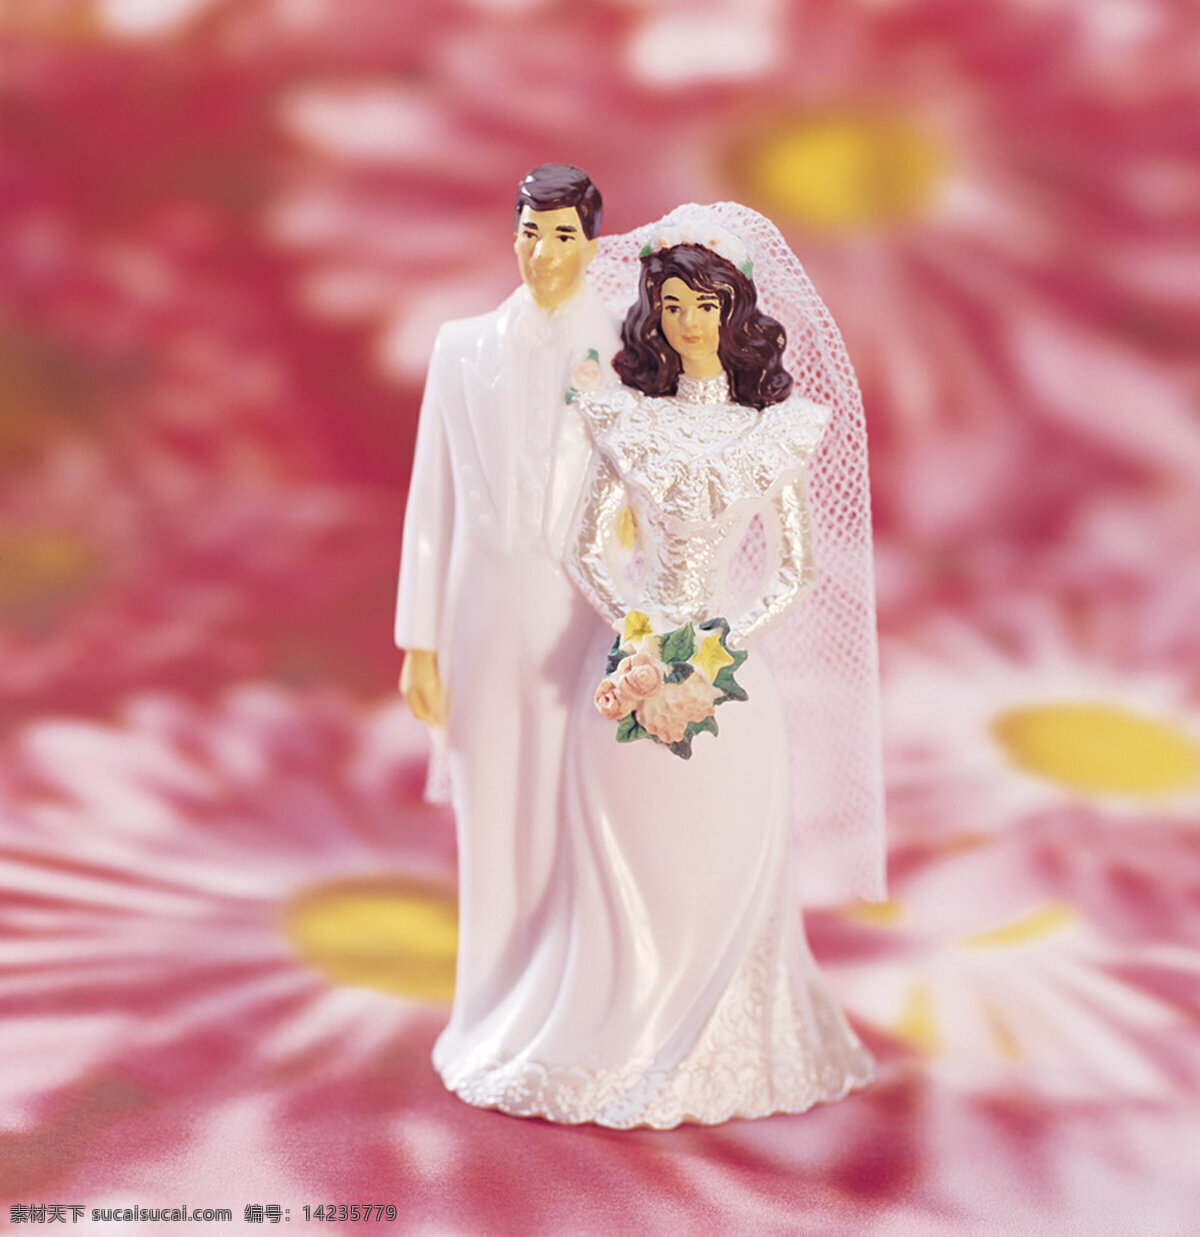 中国 传统节日 类 婚礼 文化艺术 摄影图库 300